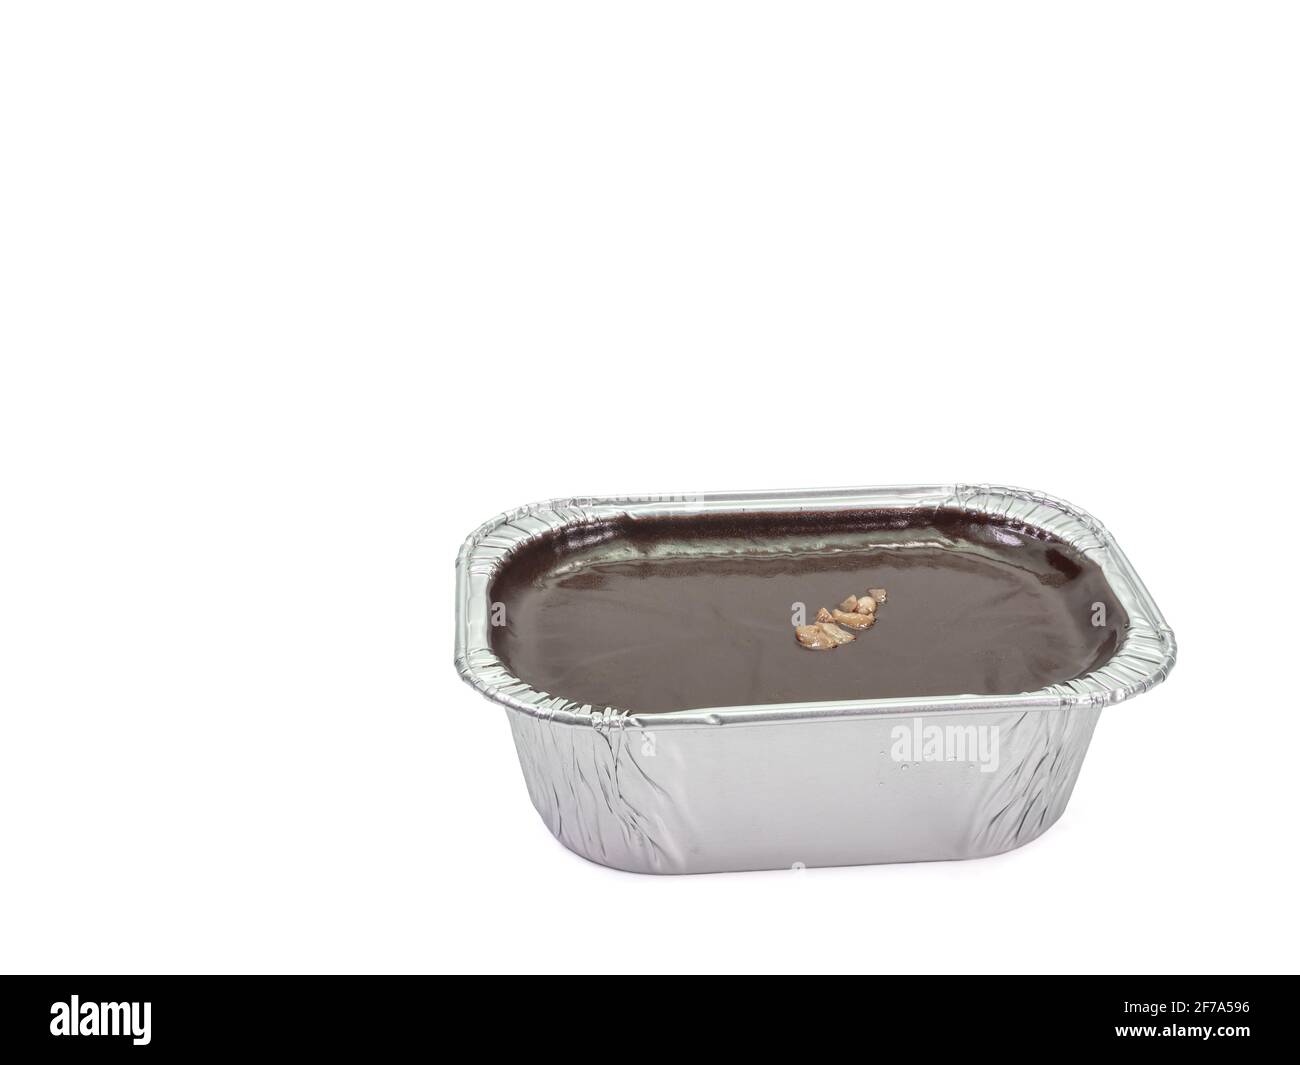 Torta al cioccolato fondente, un primo piano di mousse brownie torta fatta in casa in una tazza di lamina di alluminio isolato su sfondo bianco. Foto Stock